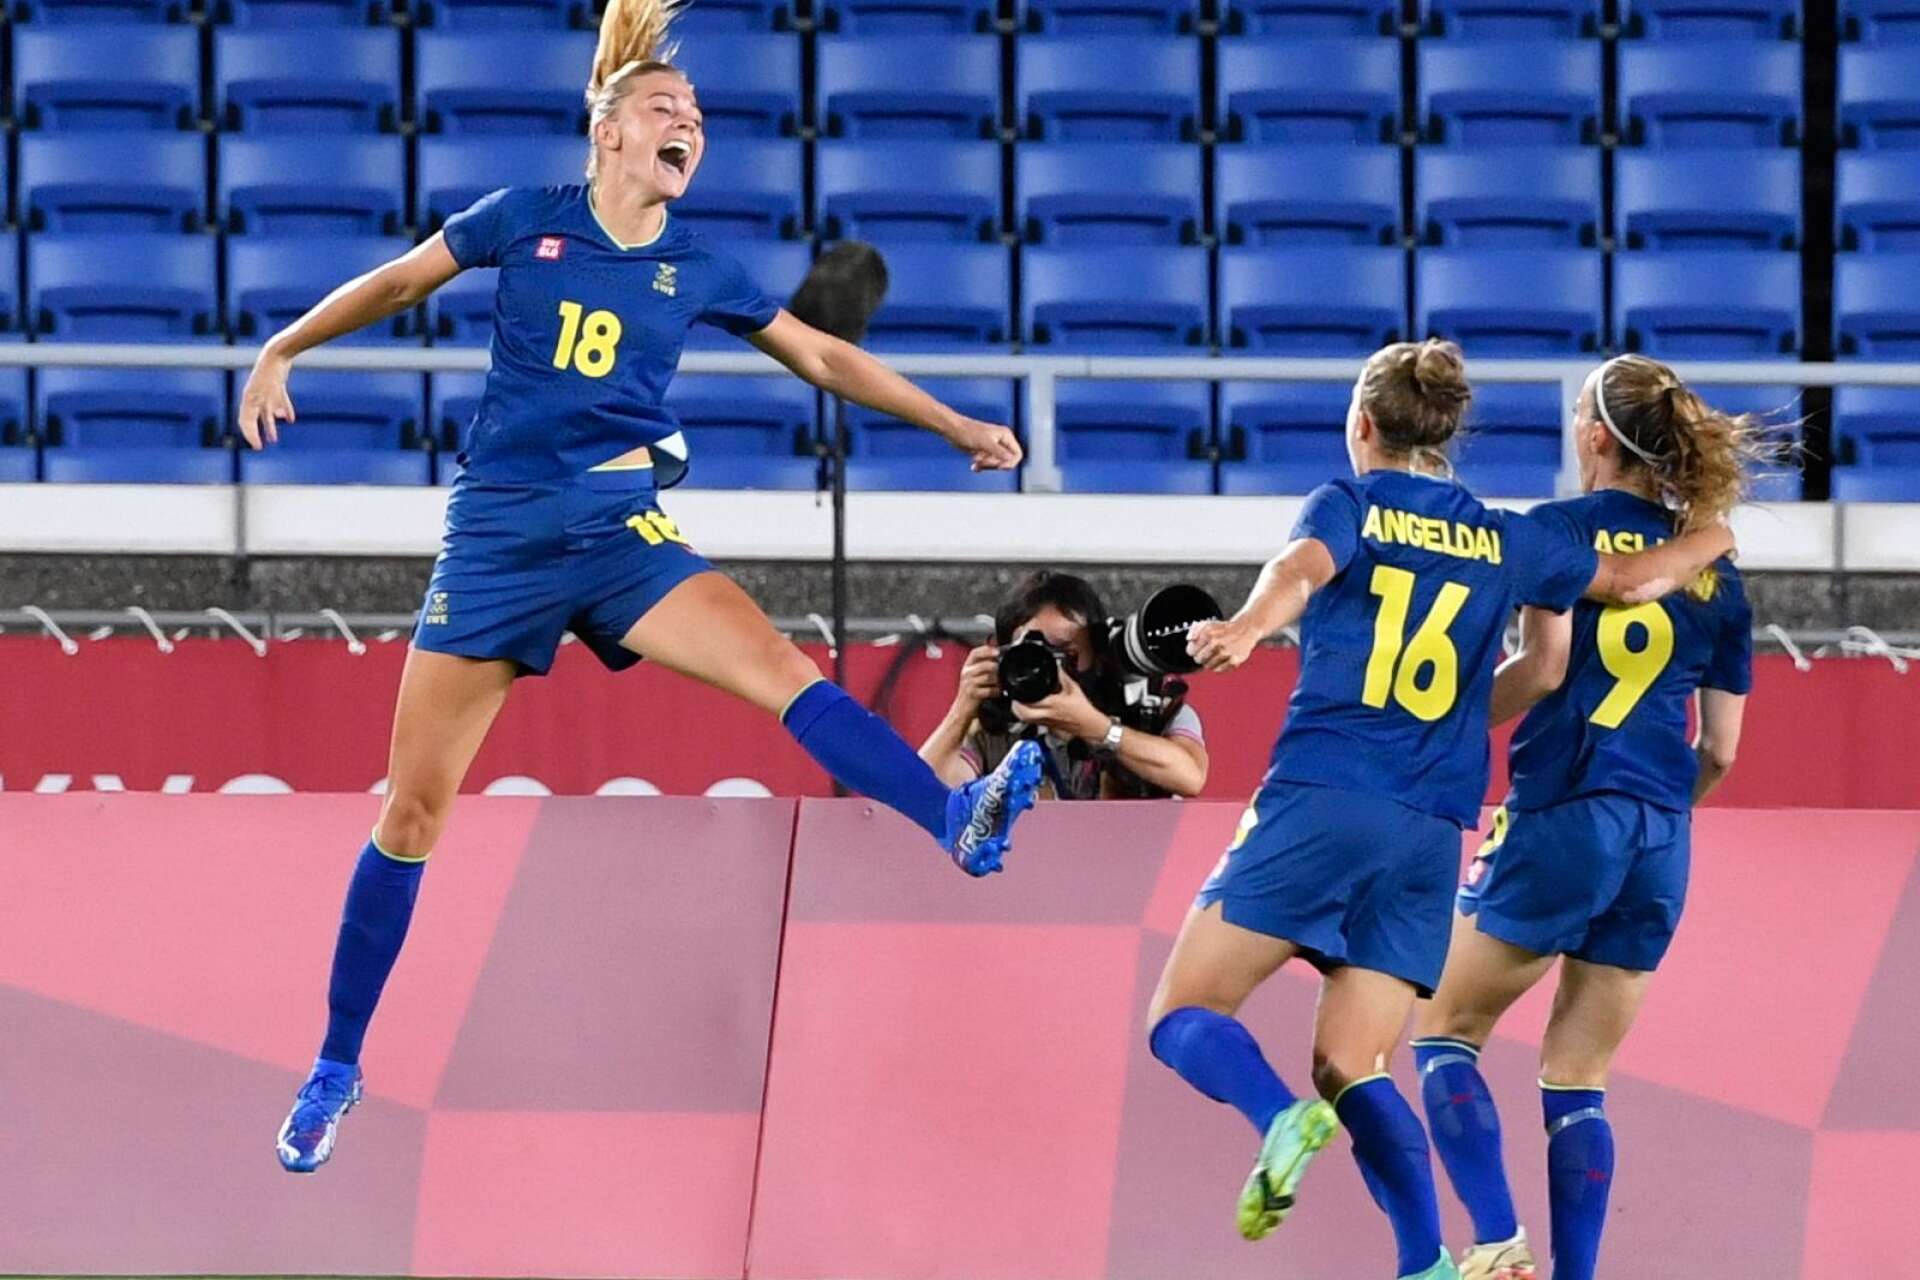 Fridolina Rolfö jublar efter att ha gjort 1-0 måndagens semifinal i damernas fotboll mellan Australien och Sverige under under sommar-OS i Tokyo.